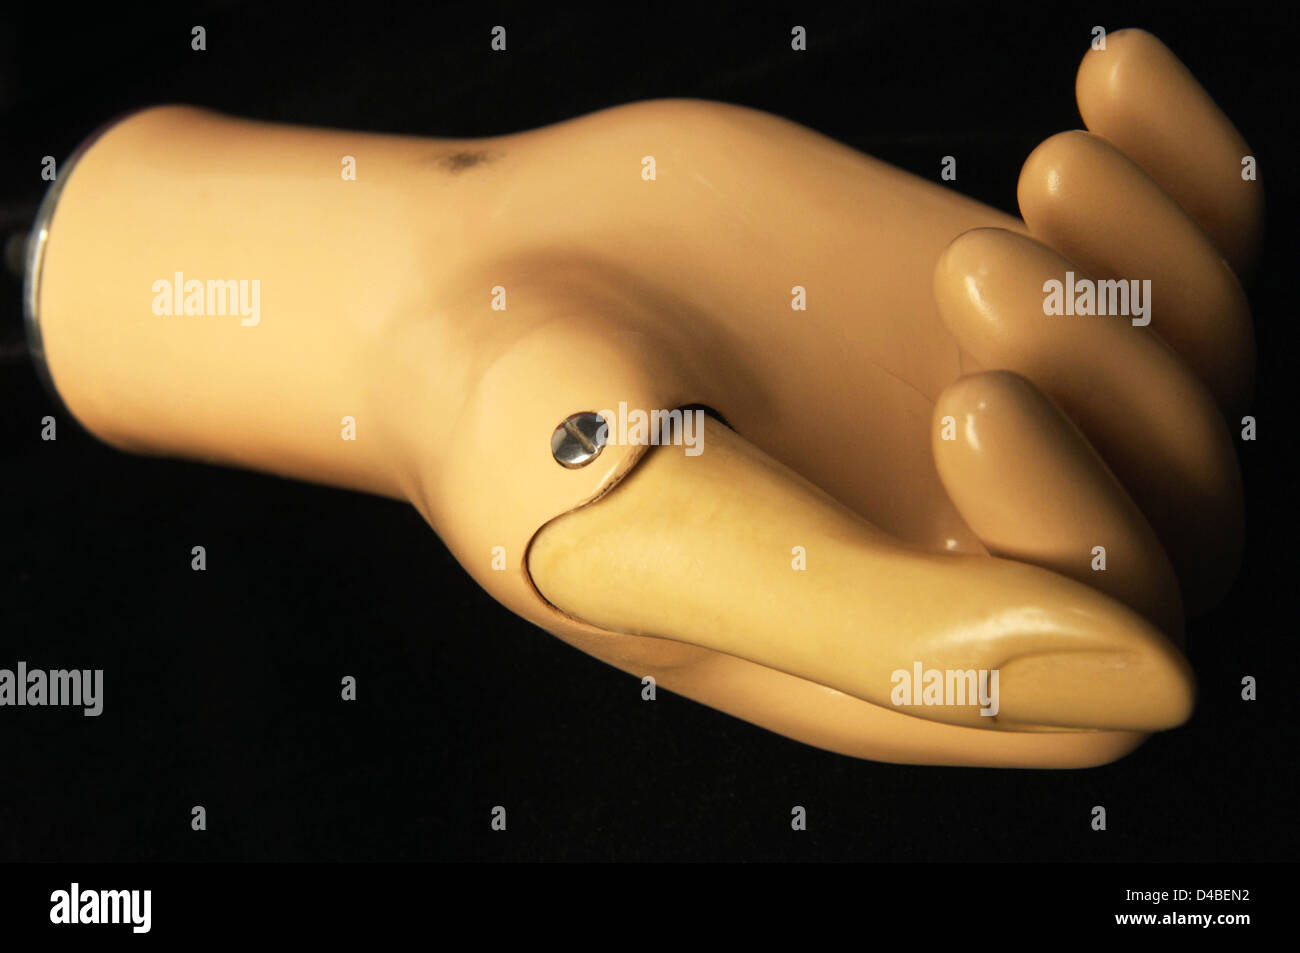 Prothetische Steeplon Hand entworfen, Arbeit in Verbindung Arbeitsarm über herkömmliche Zahnspange Riemenscheiben Schnüre gesteuert Stockfoto